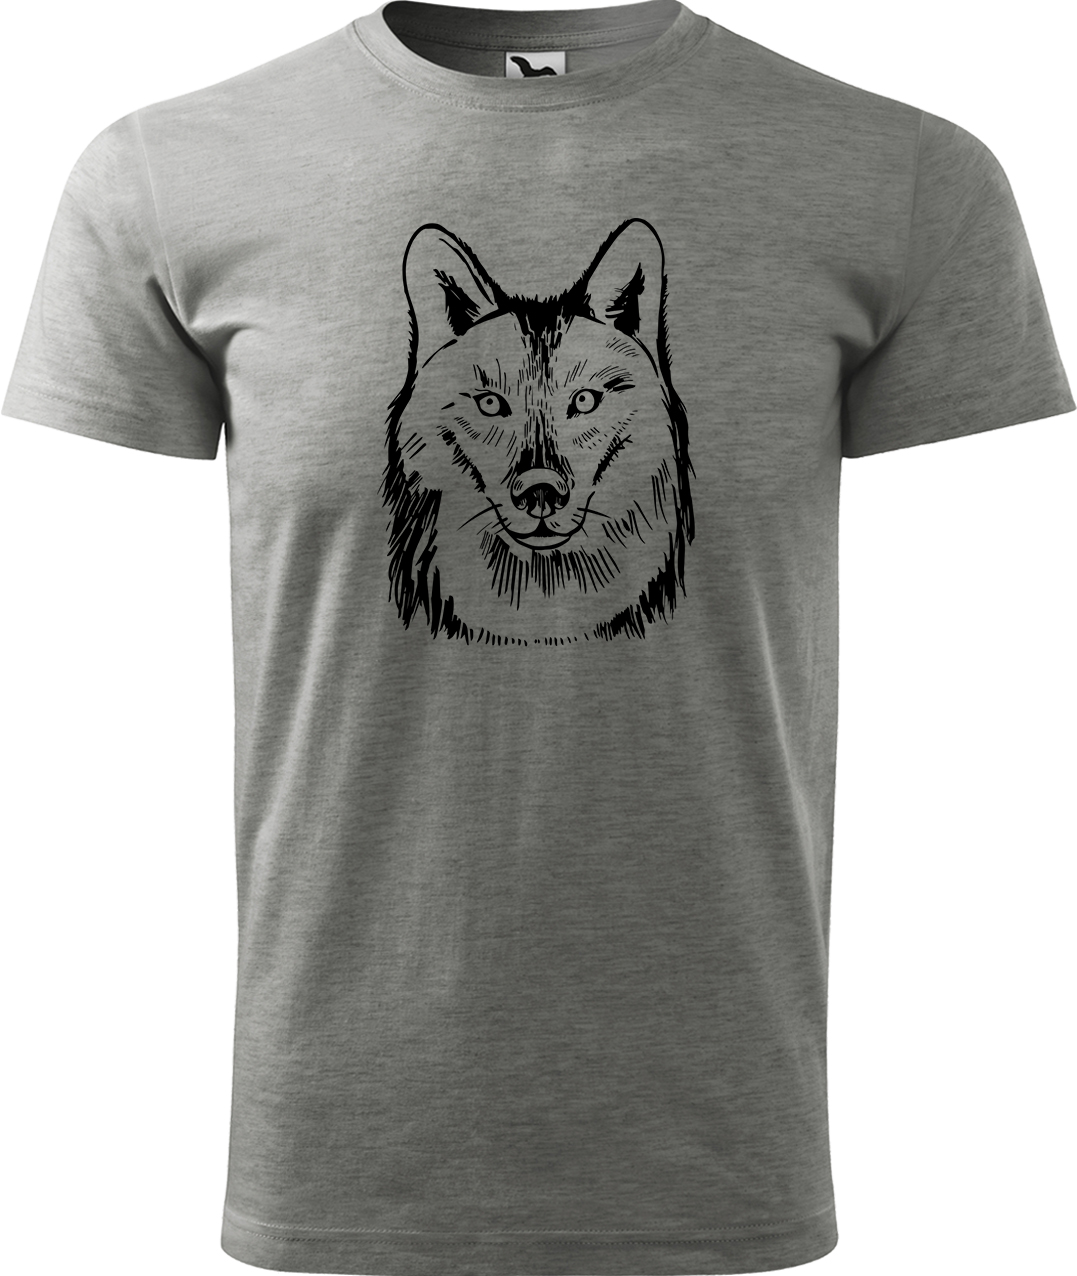 Pánské tričko s vlkem - Kresba vlka Velikost: L, Barva: Tmavě šedý melír (12), Střih: pánský